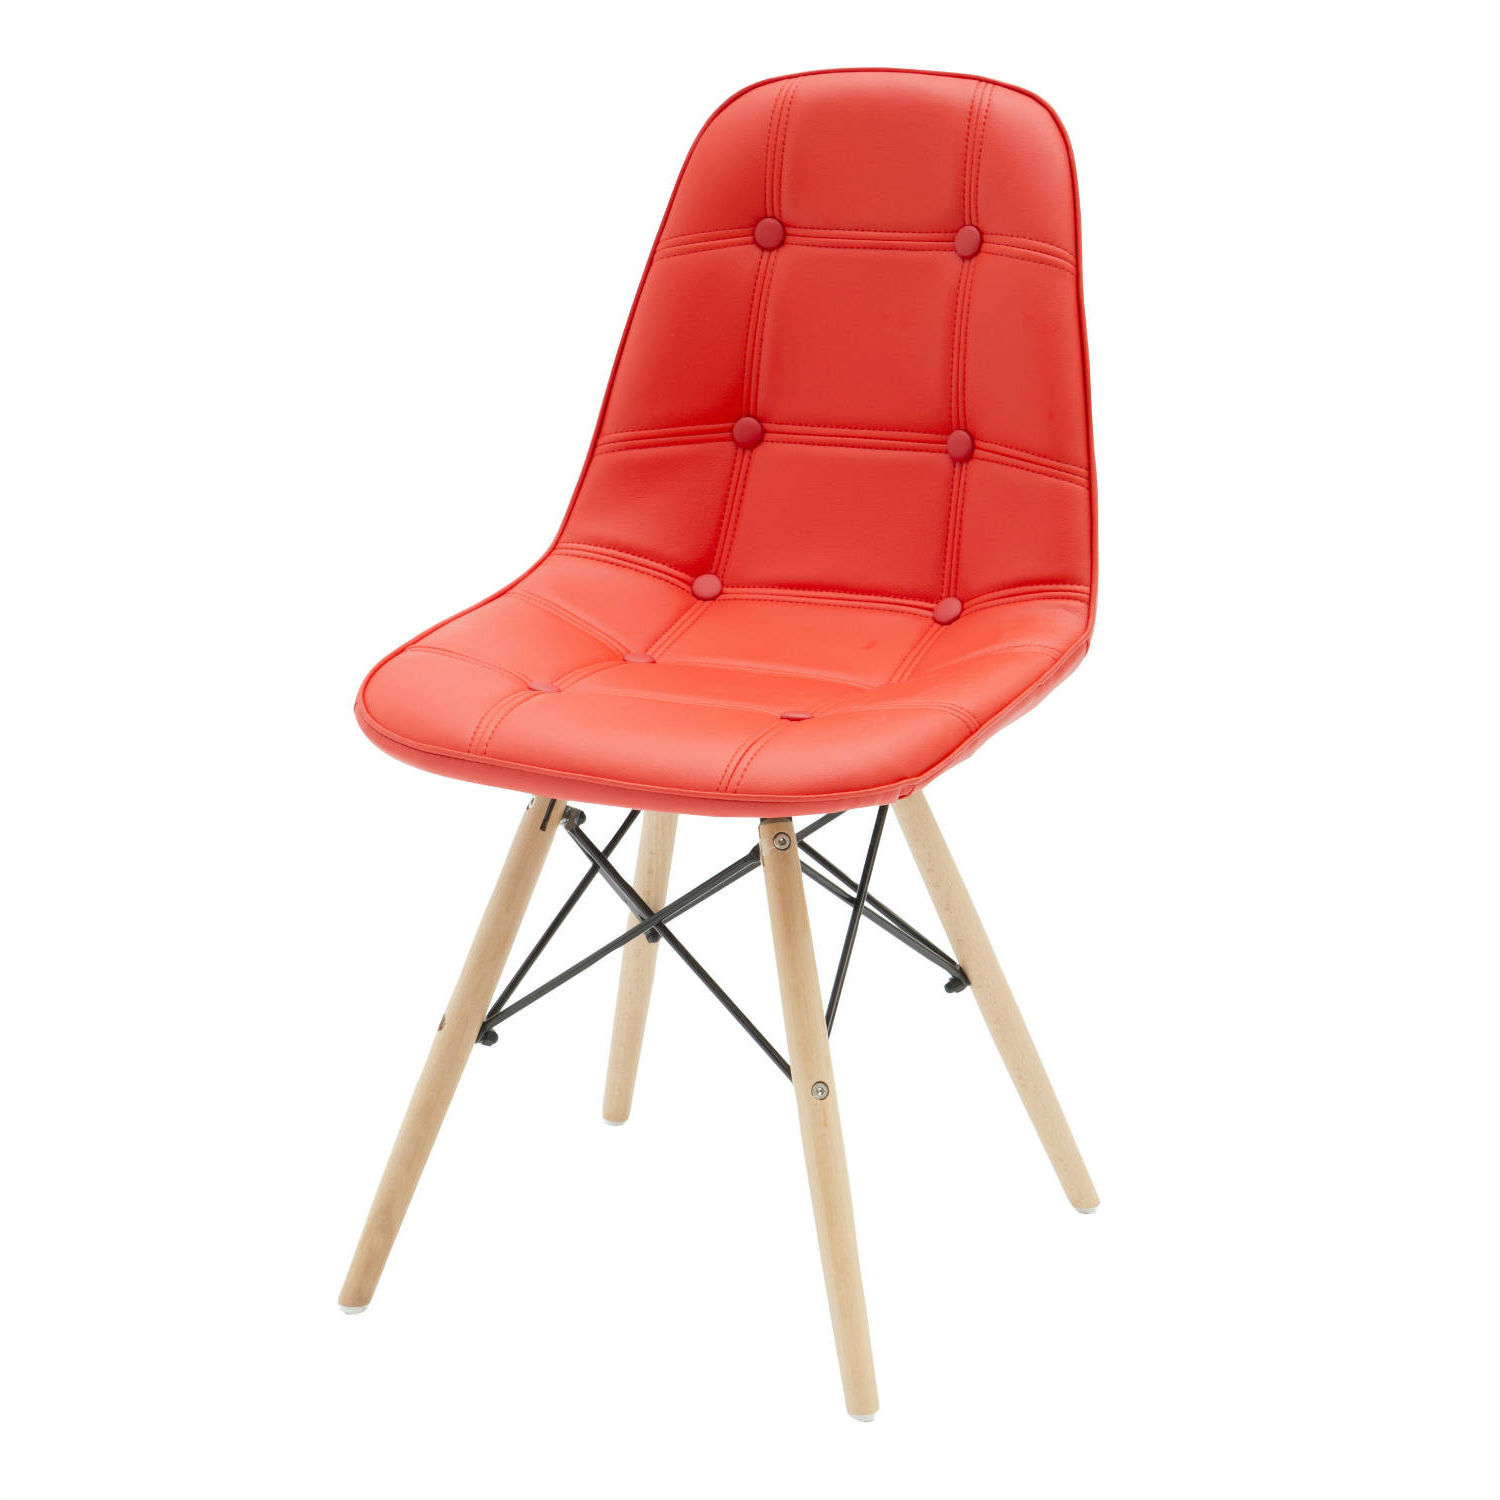 Sedia Moderna in Ecopelle Rossa con Bottoni 2 Pezzi (disponibile anche in altri colori)